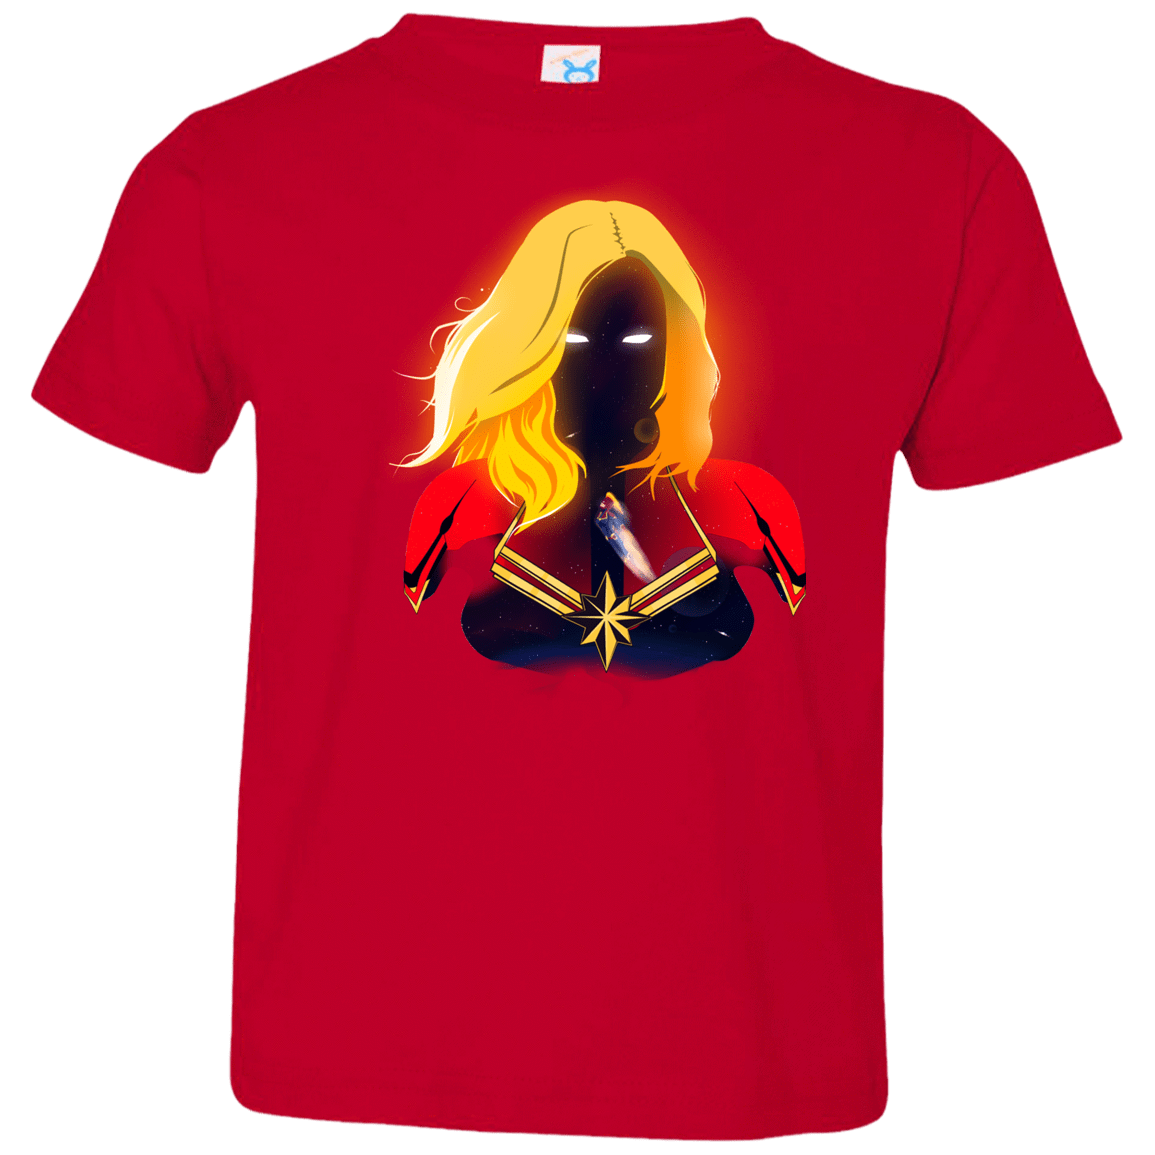 T-Shirts Red / 2T M A R V E L Toddler Premium T-Shirt